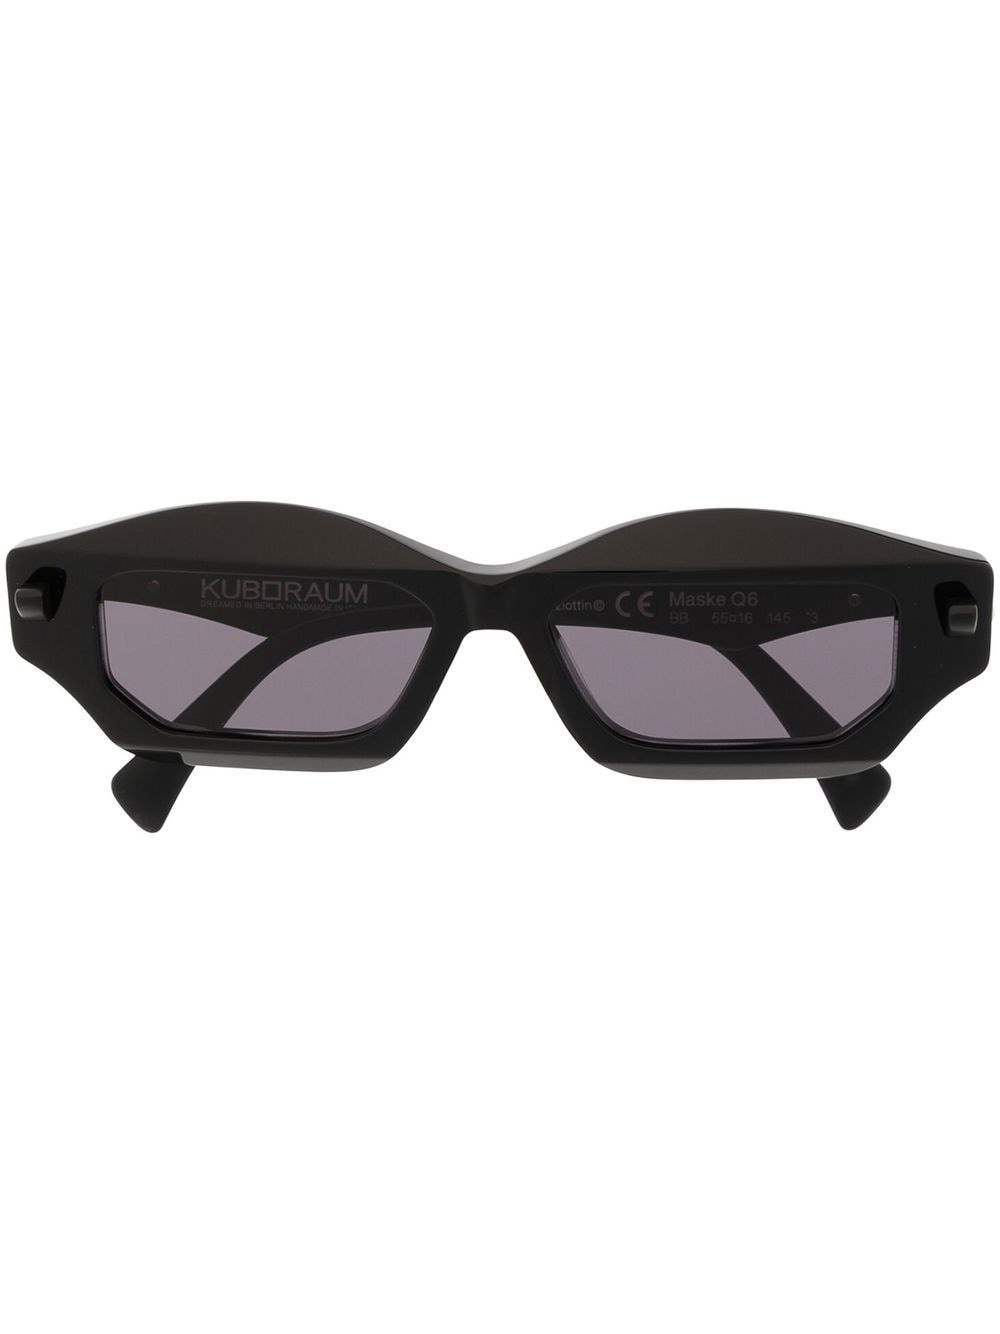 Maske Q6 sunglasses - 1